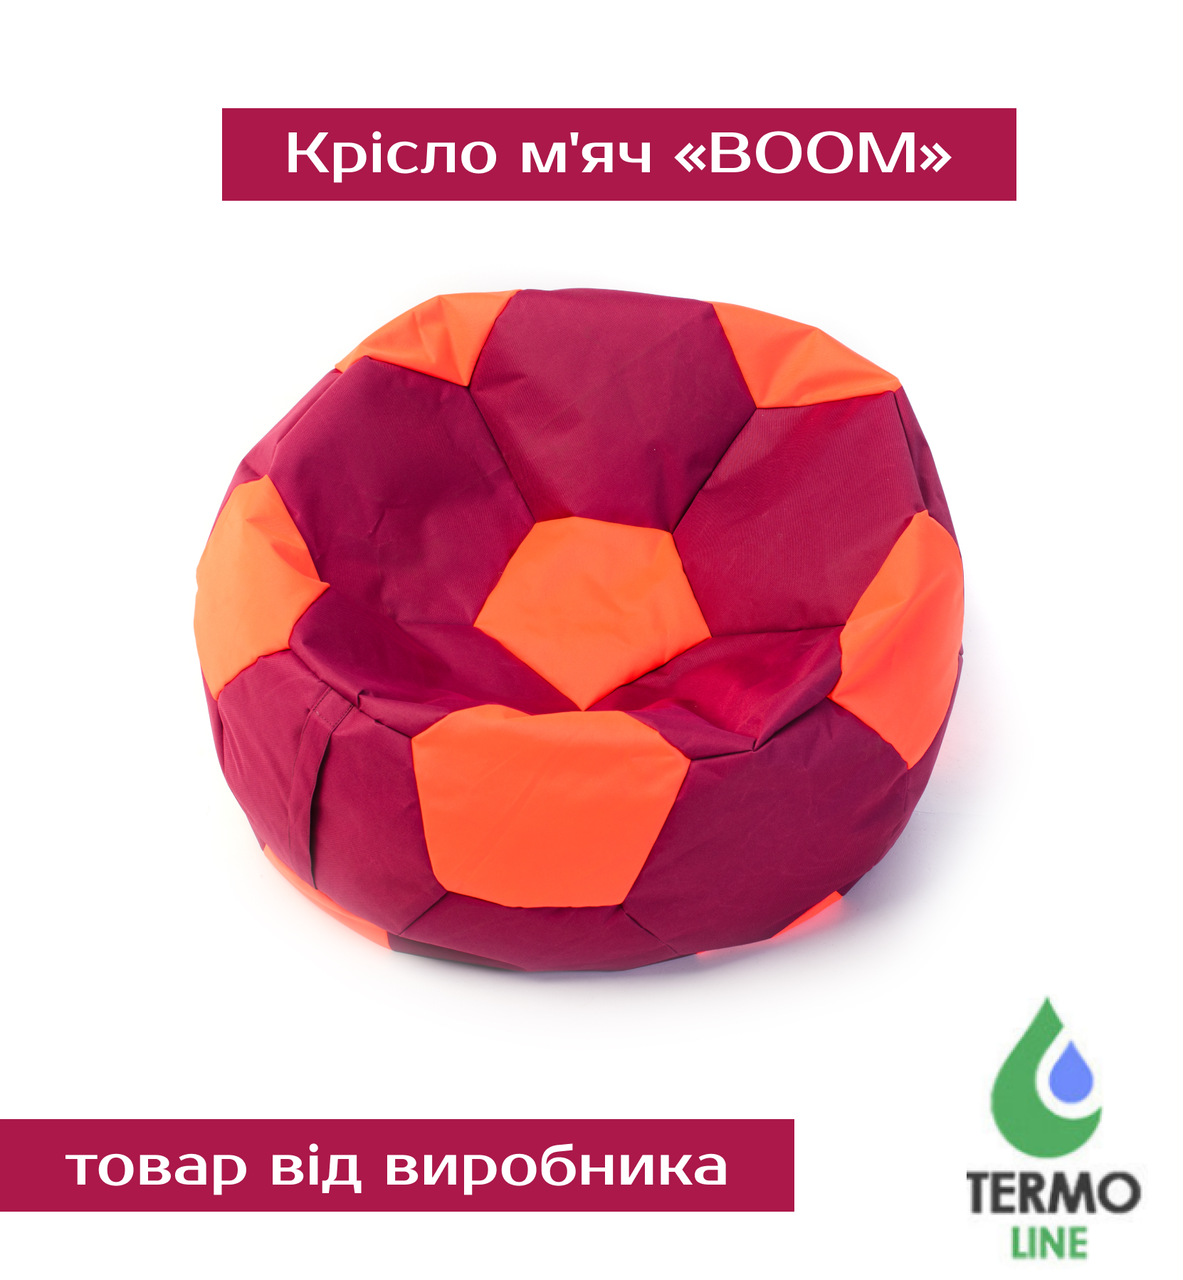 Крісло м'яч «BOOM» 120см бордо-помаранчевий, фото 1